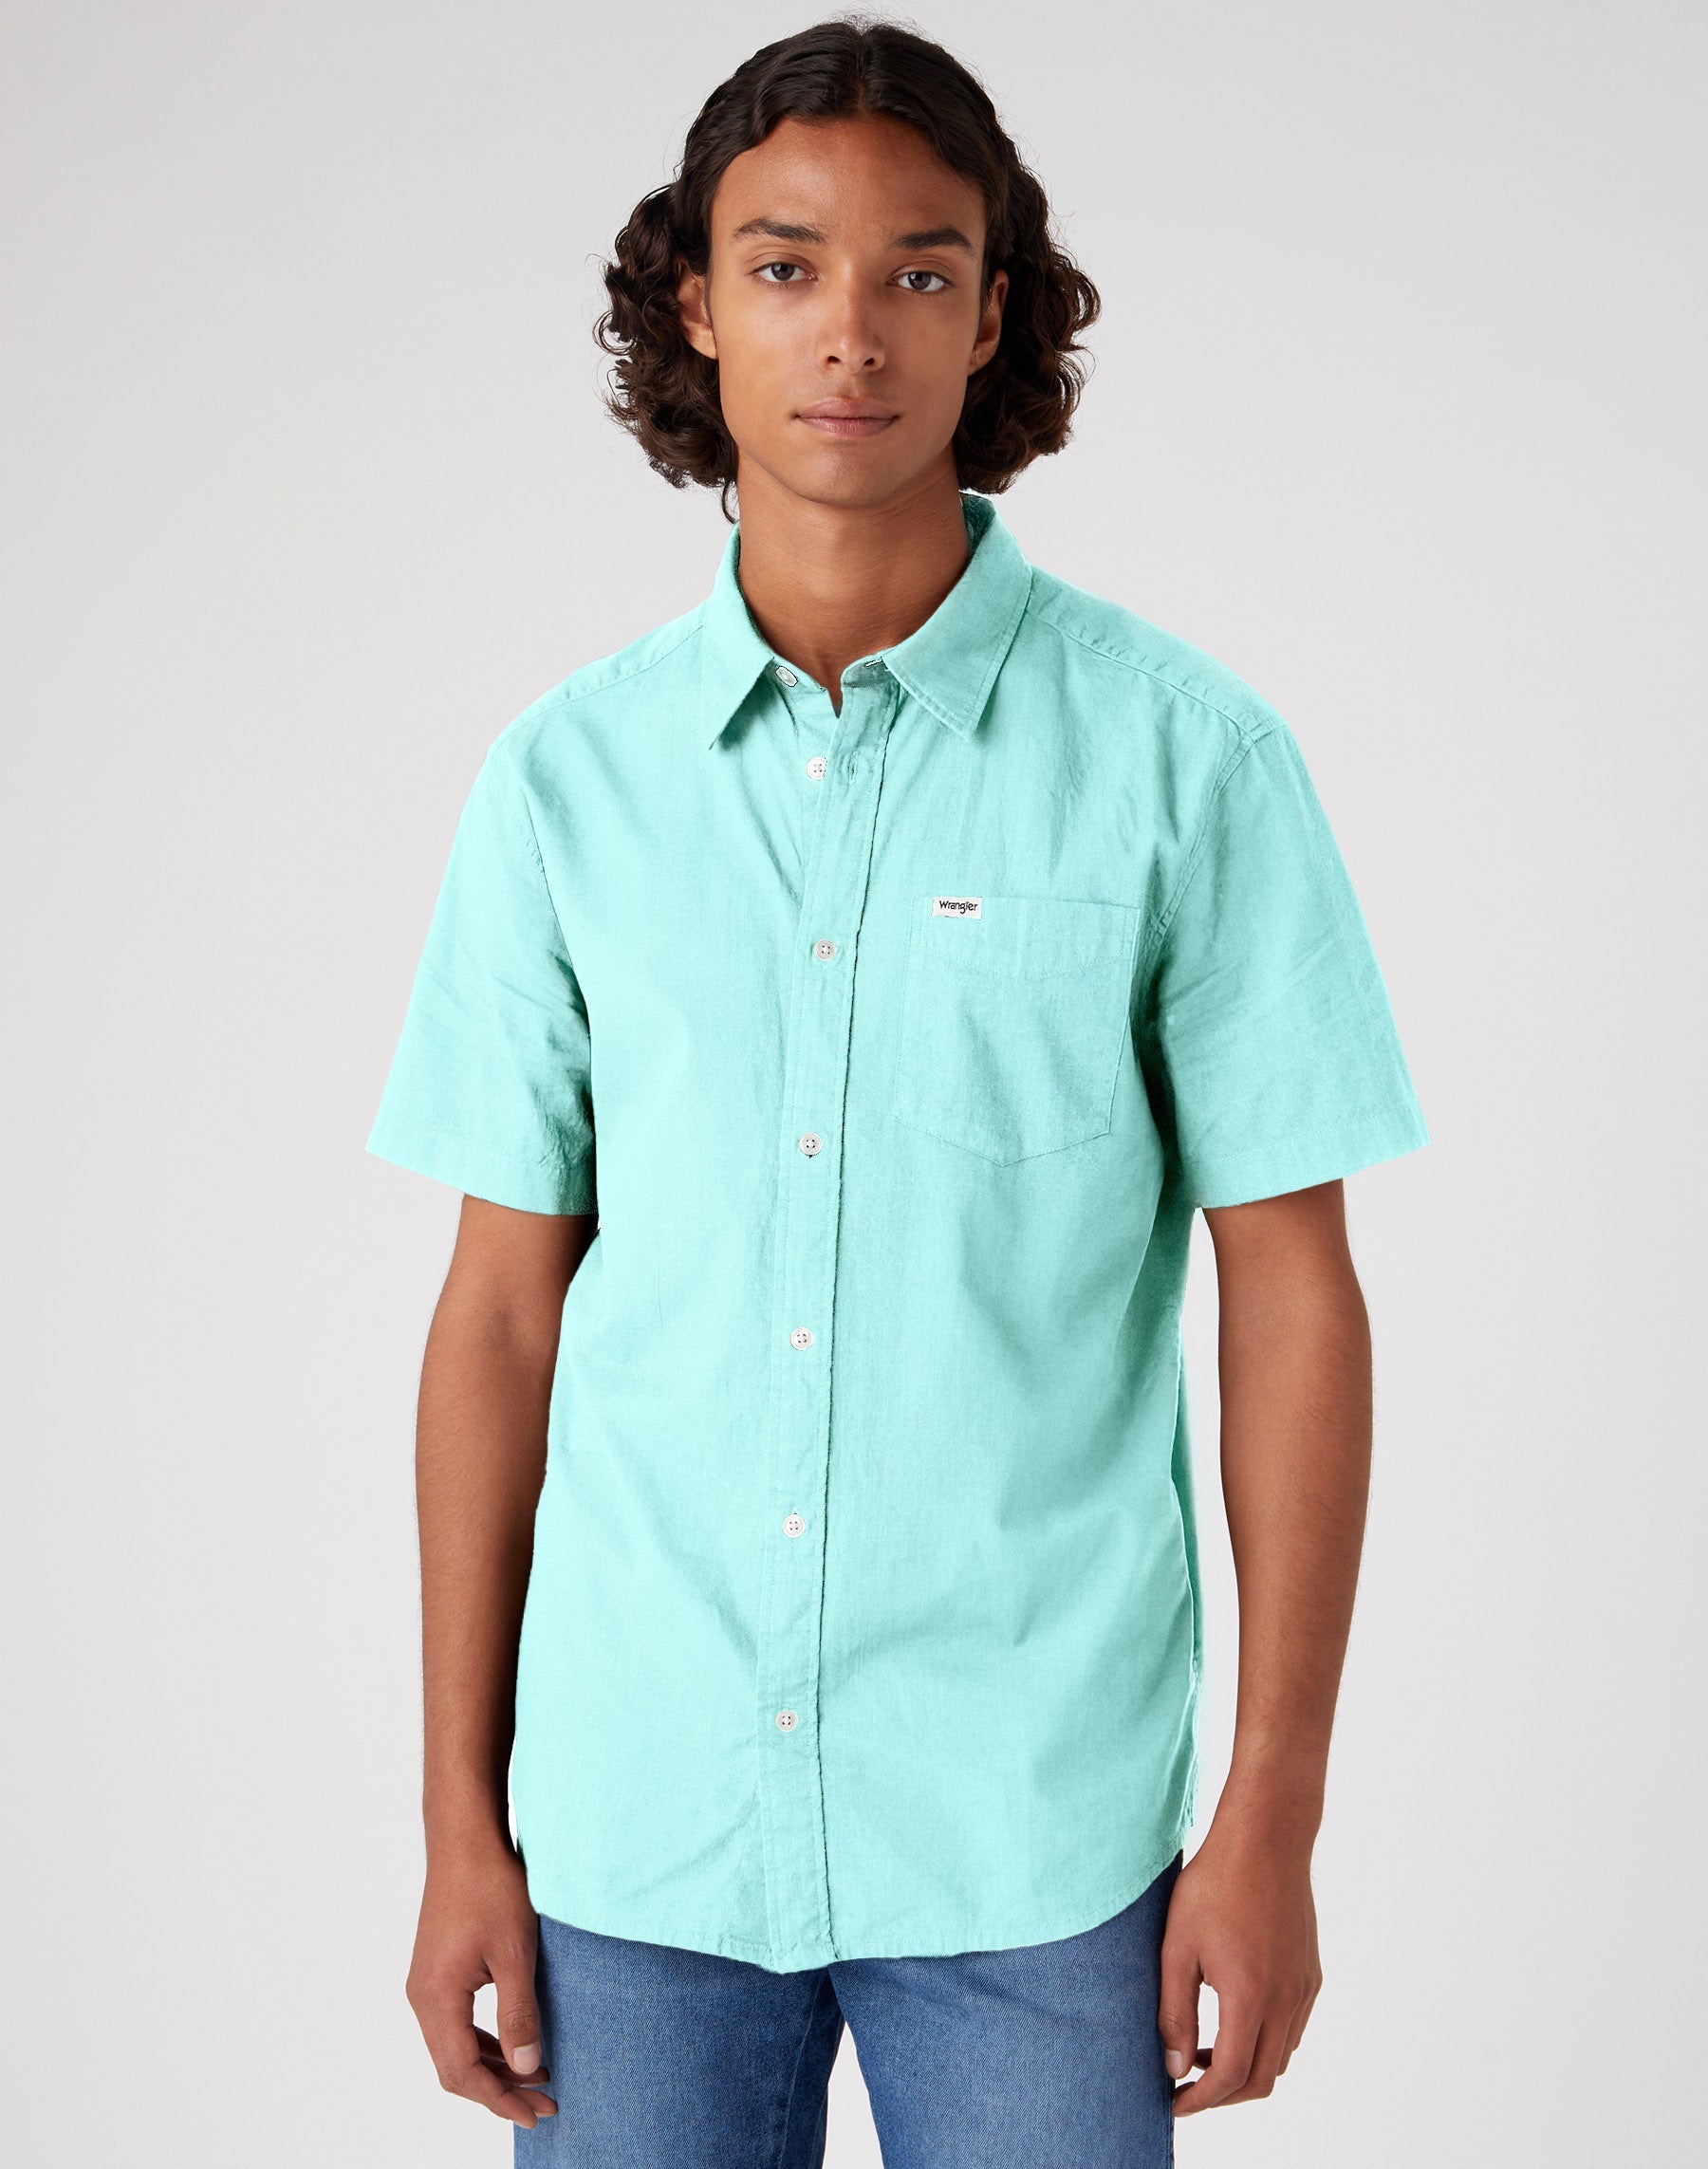 Short Sleeve One Pocket Shirt in Canal Blue Hemden Wrangler   